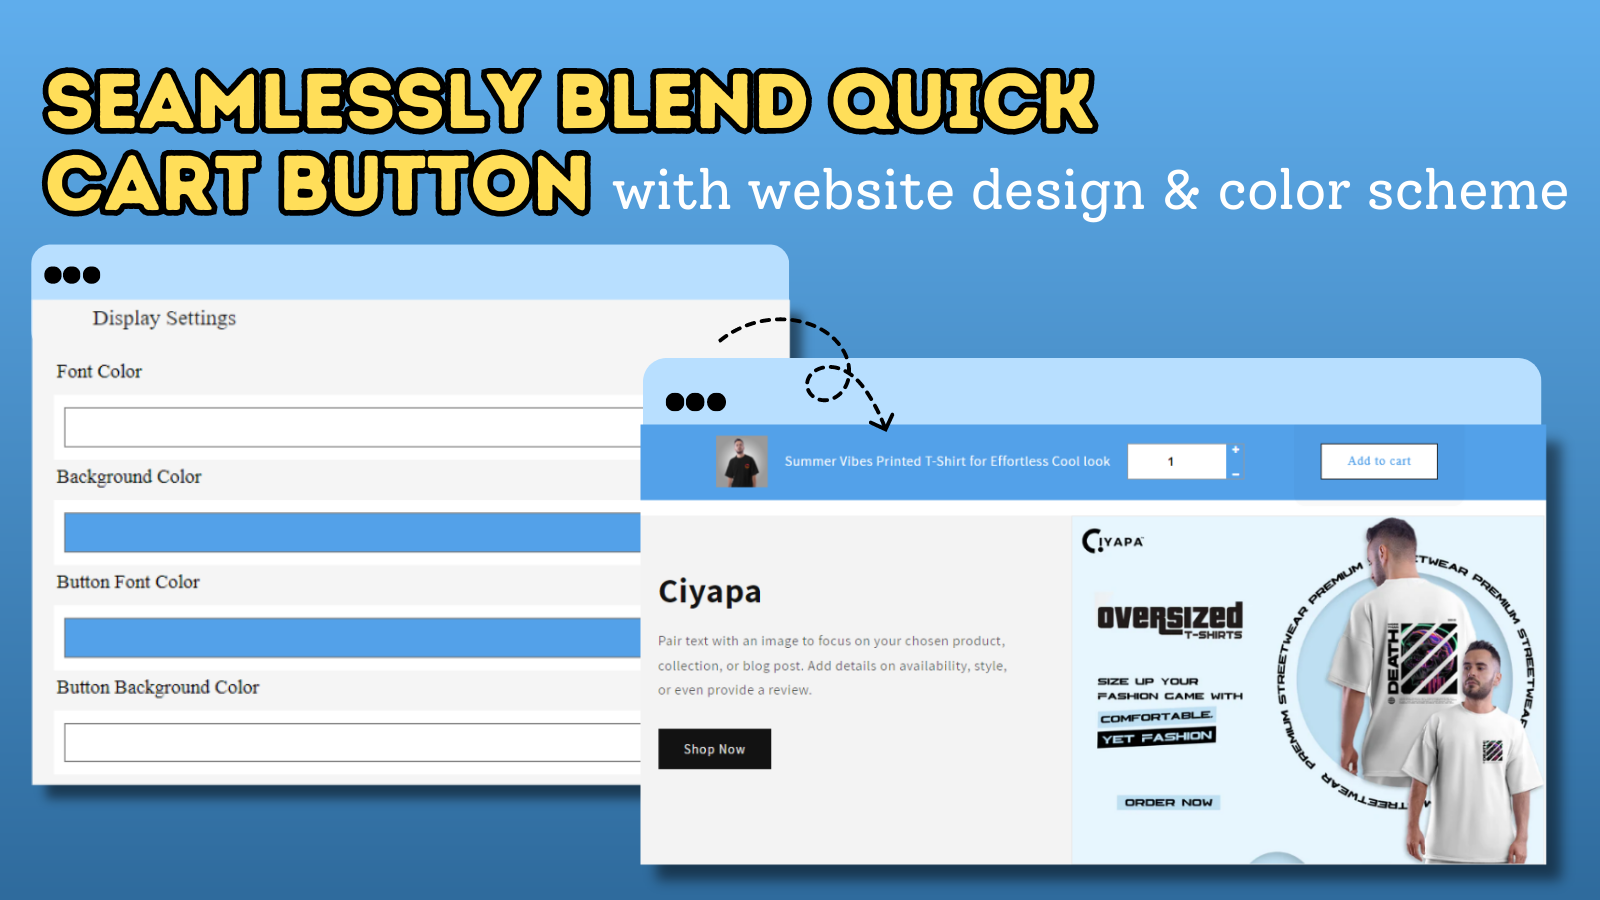 Blend Quick Cart Button With Website